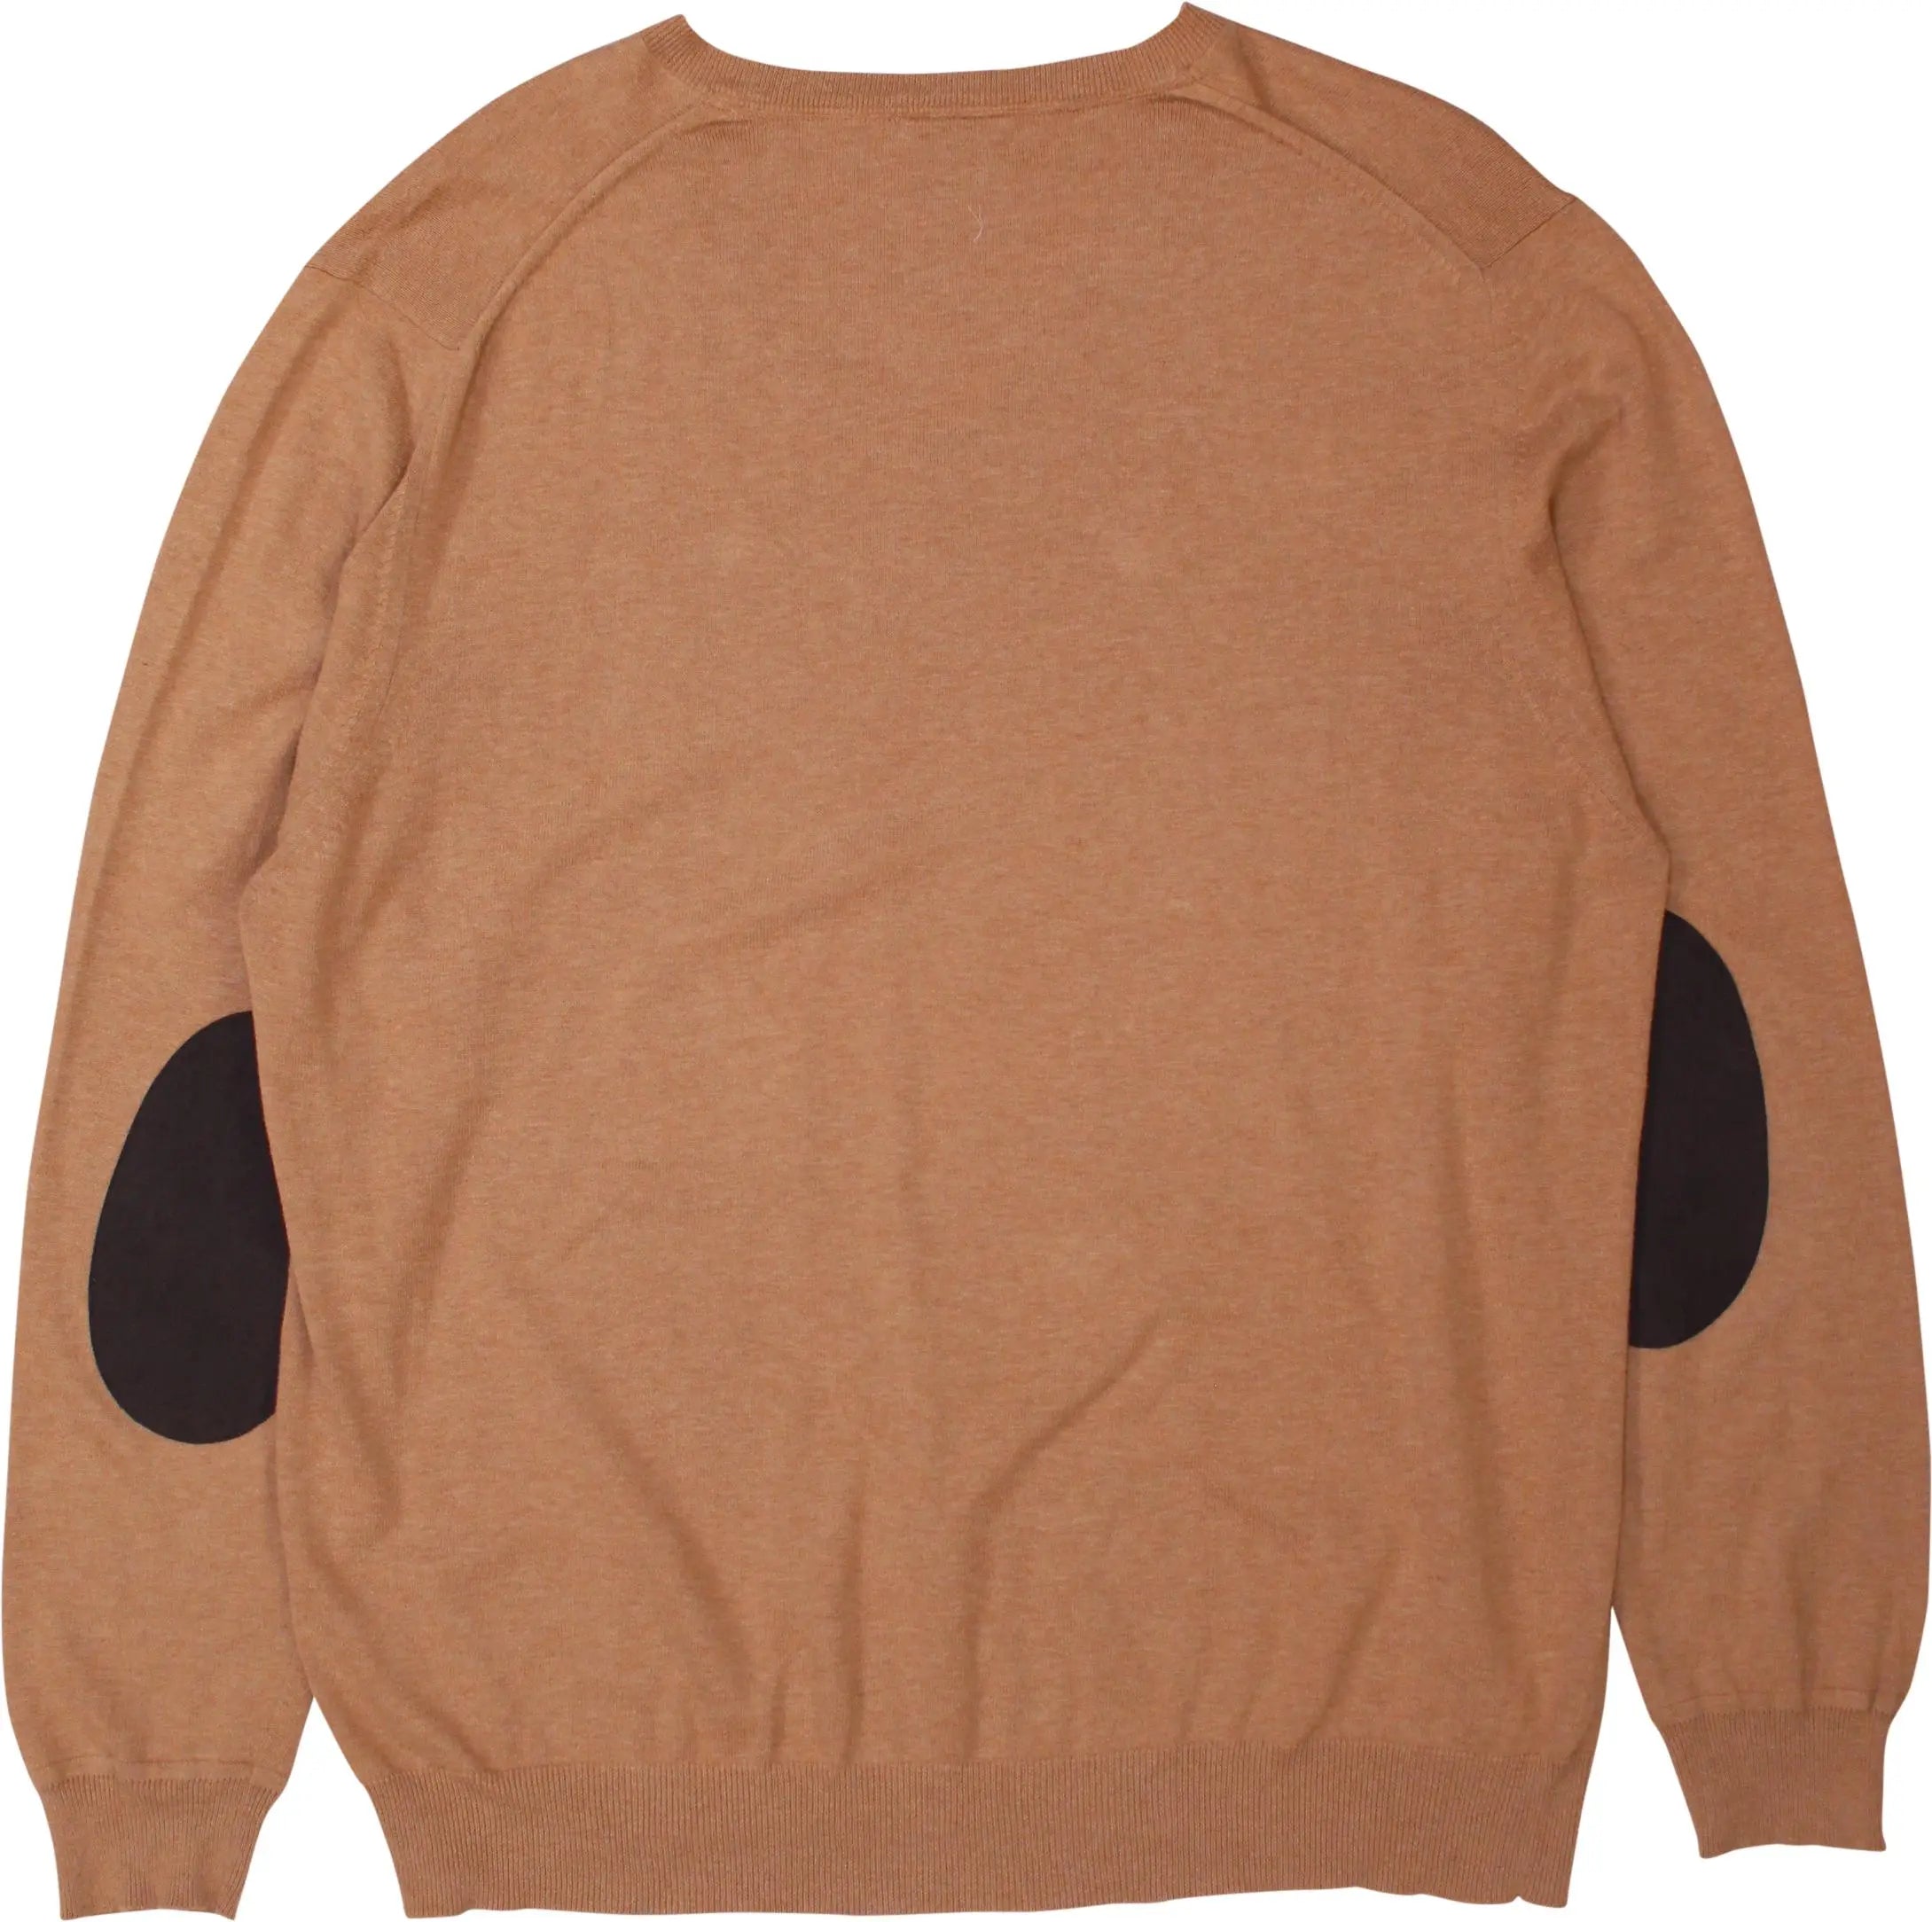 McGregor - V-Neck Sweater- ThriftTale.com - Vintage and second handclothing